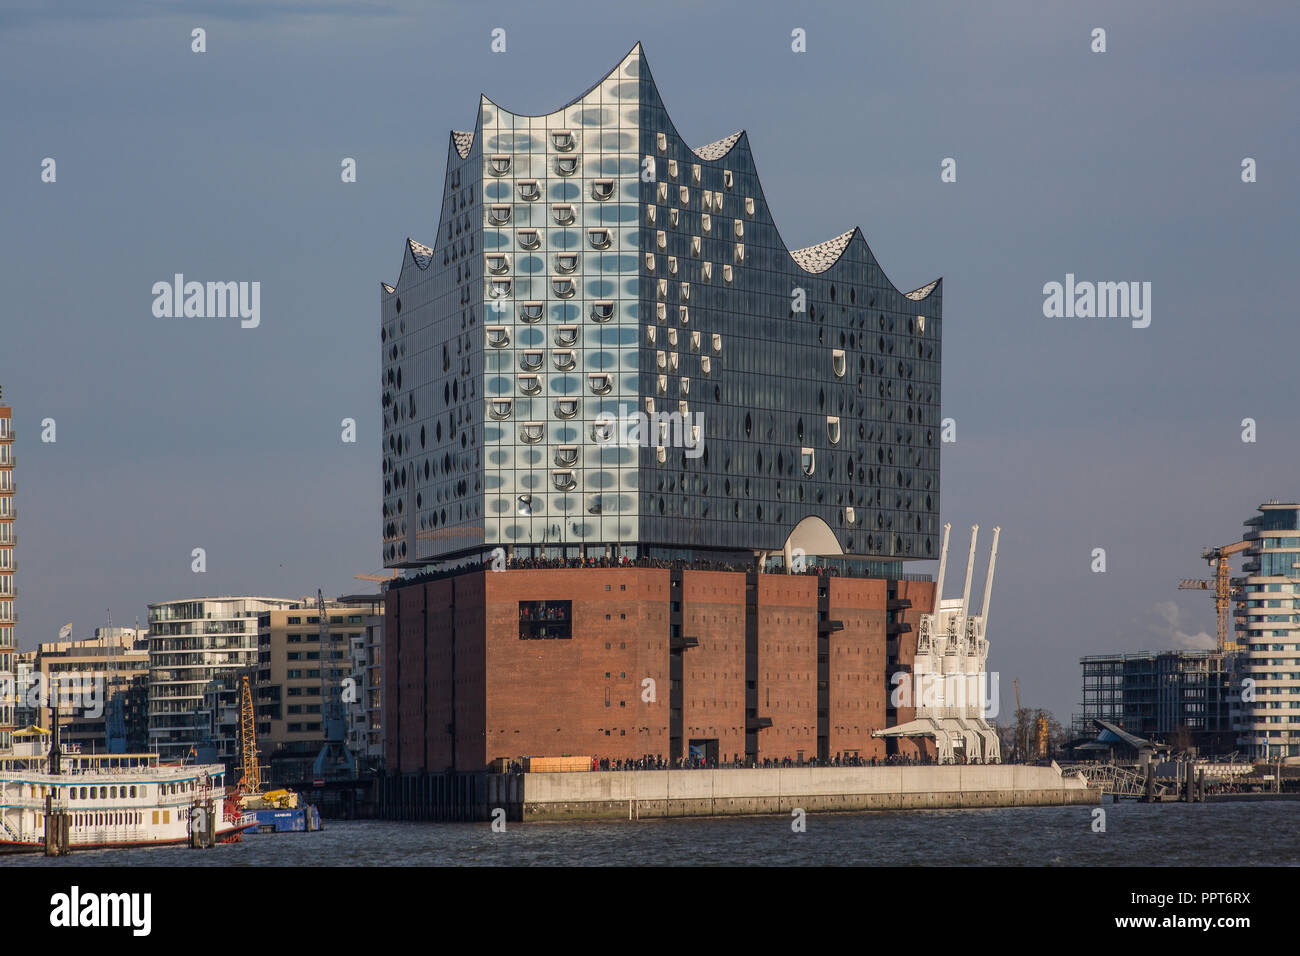 Amburgo, Elbphilharmonie, Fernsicht von Südwesten, Entwurf Herzog & de Meuron, erbaut 2007-2016, Backsteinsockel gebildet vom 1963 erbauten ehemaligen Foto Stock